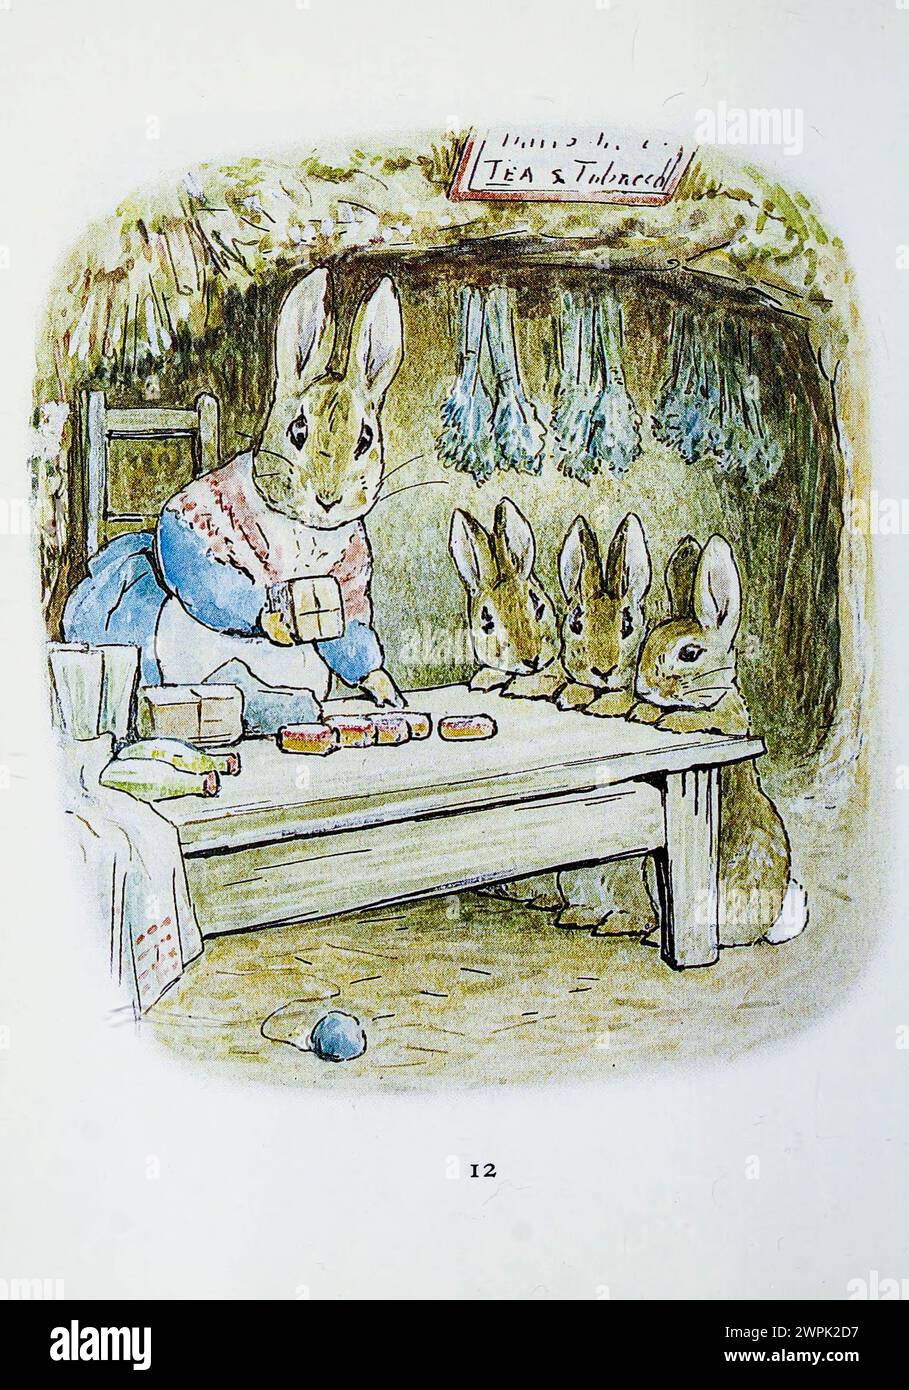 The Tale of Benjamin Bunny ist ein Kinderbuch von Beatrix Potter, das erstmals im September 1904 von Frederick warne & Co. Veröffentlicht wurde. Das Buch ist eine Fortsetzung der Geschichte von Peter Rabbit (1902) und erzählt von Peters Rückkehr in Mr. McGregors Garten mit seinem Cousin Benjamin, um die Kleidung zu holen, die er dort während seines vorherigen Abenteuers verloren hat. Stockfoto